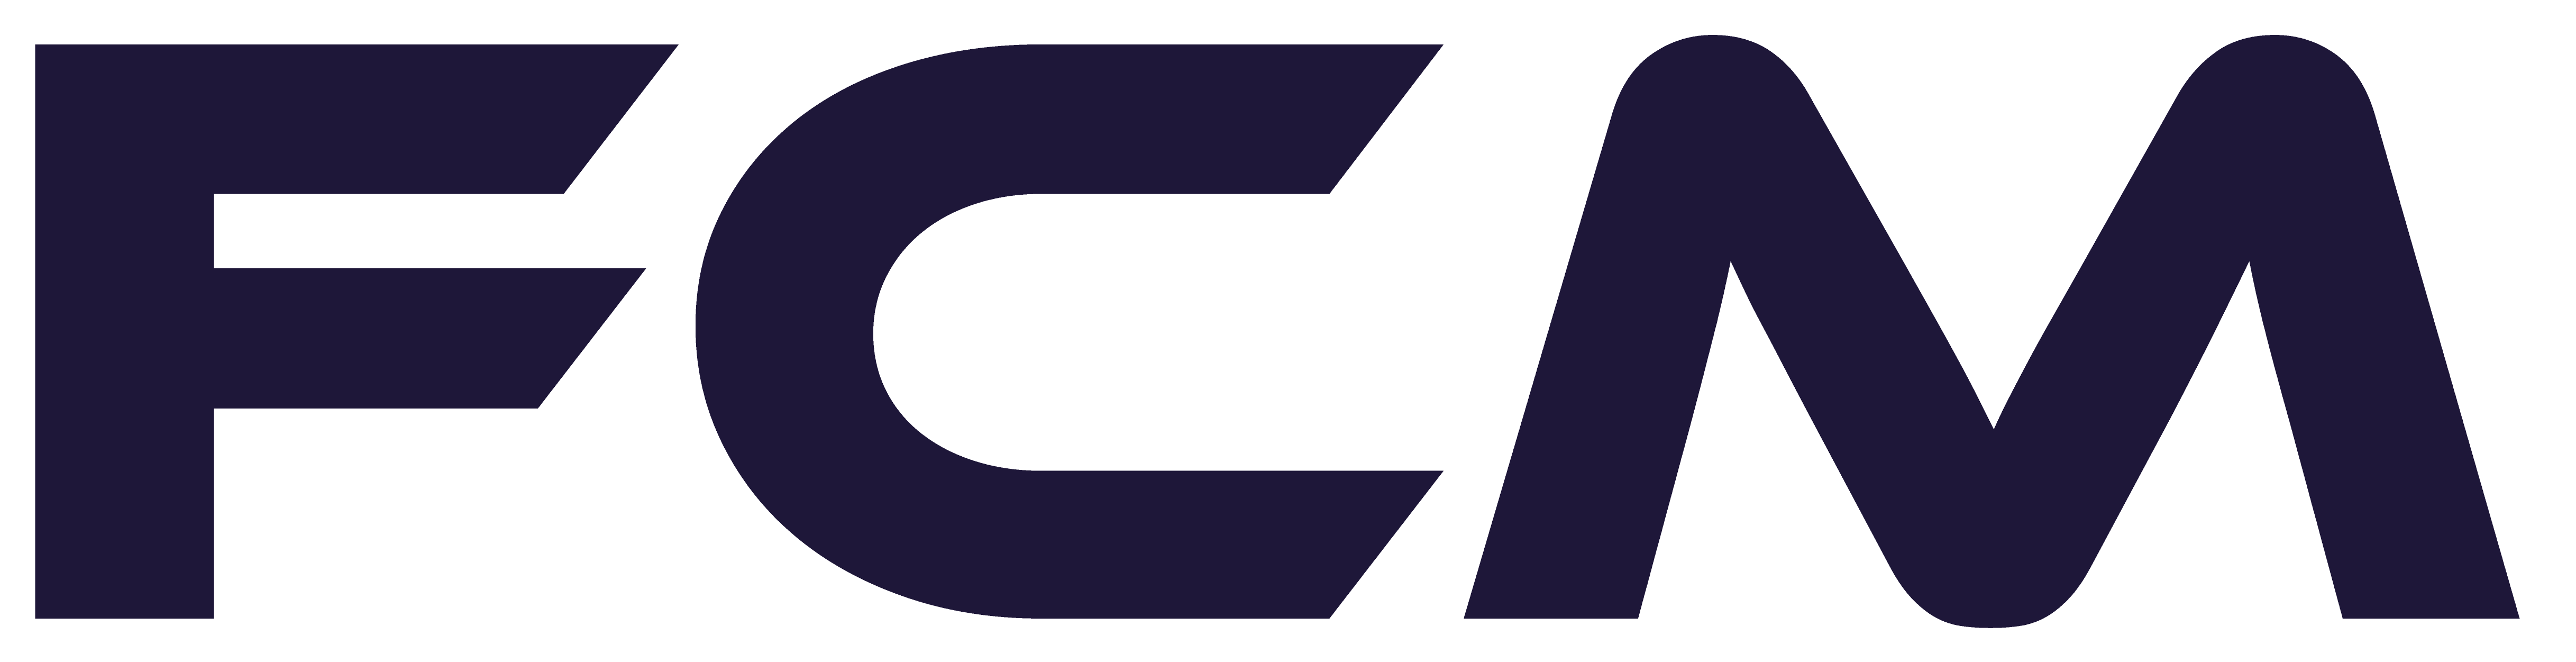 FCM blue logo